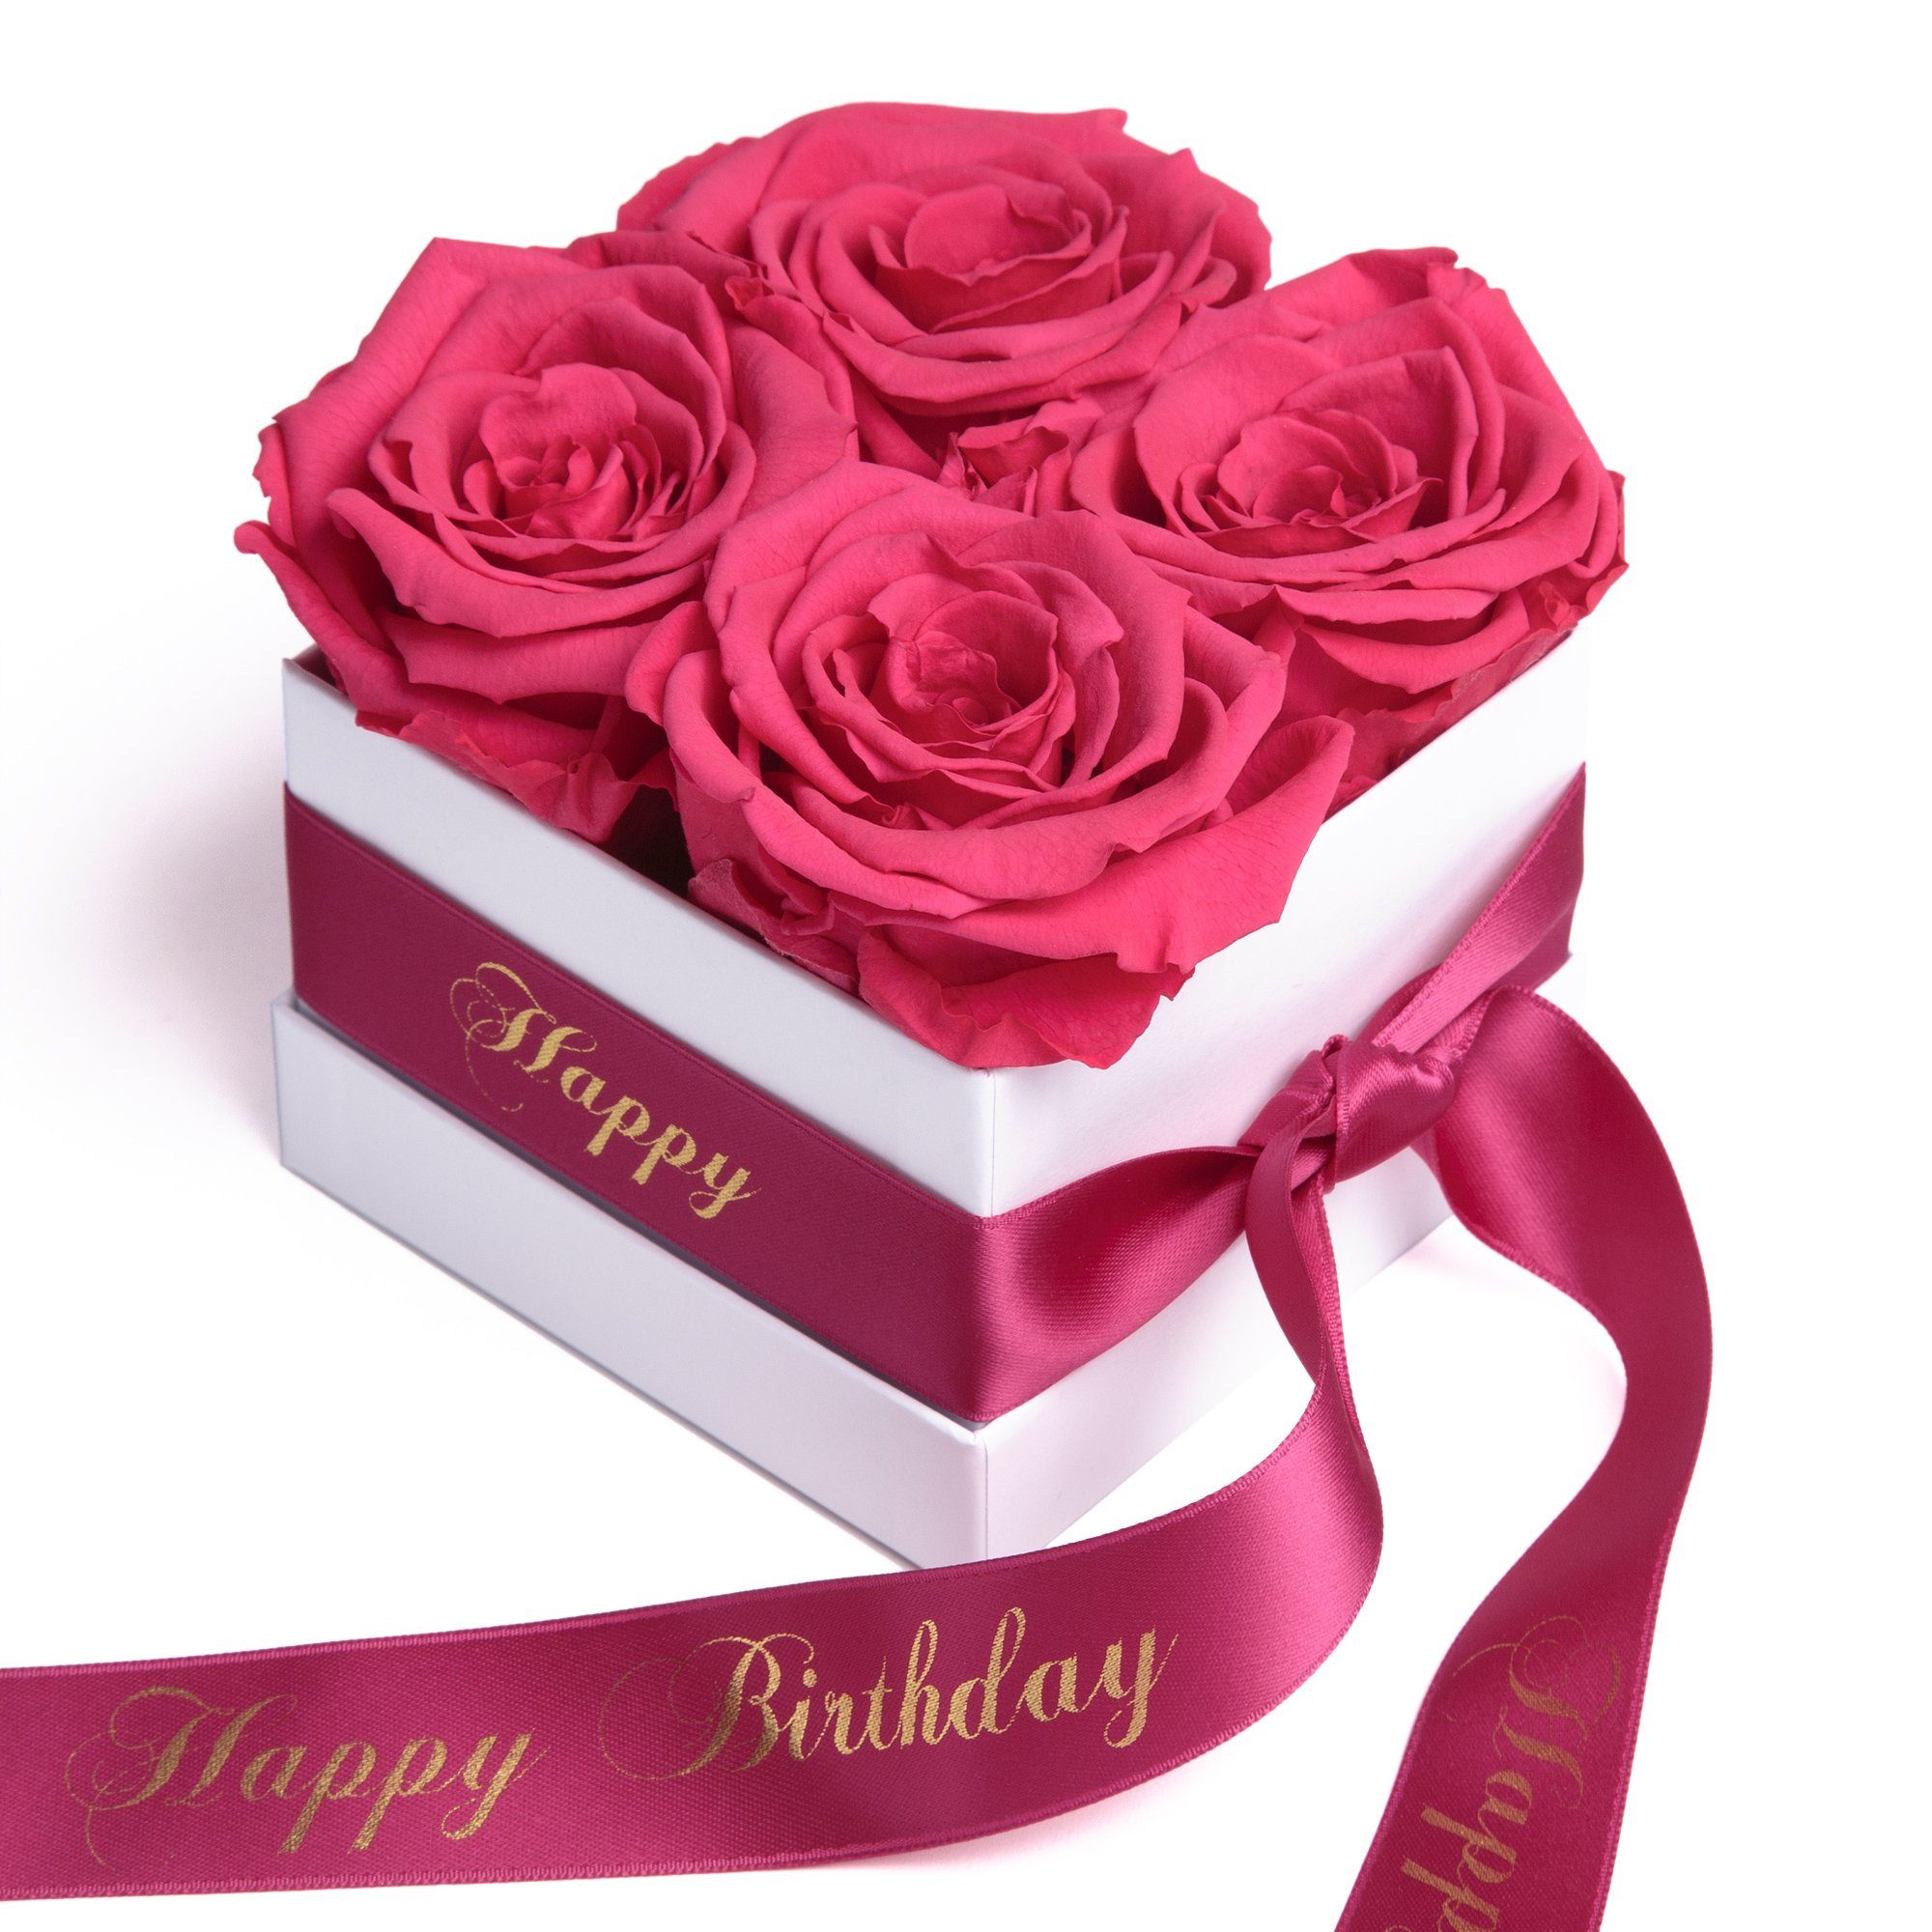 Kunstblume Infinity Rosenbox Happy Birthday Geschenk Geburtstag für Frauen  Rose, ROSEMARIE SCHULZ Heidelberg, Höhe 8.5 cm, echte Rosen haltbar 3 Jahre